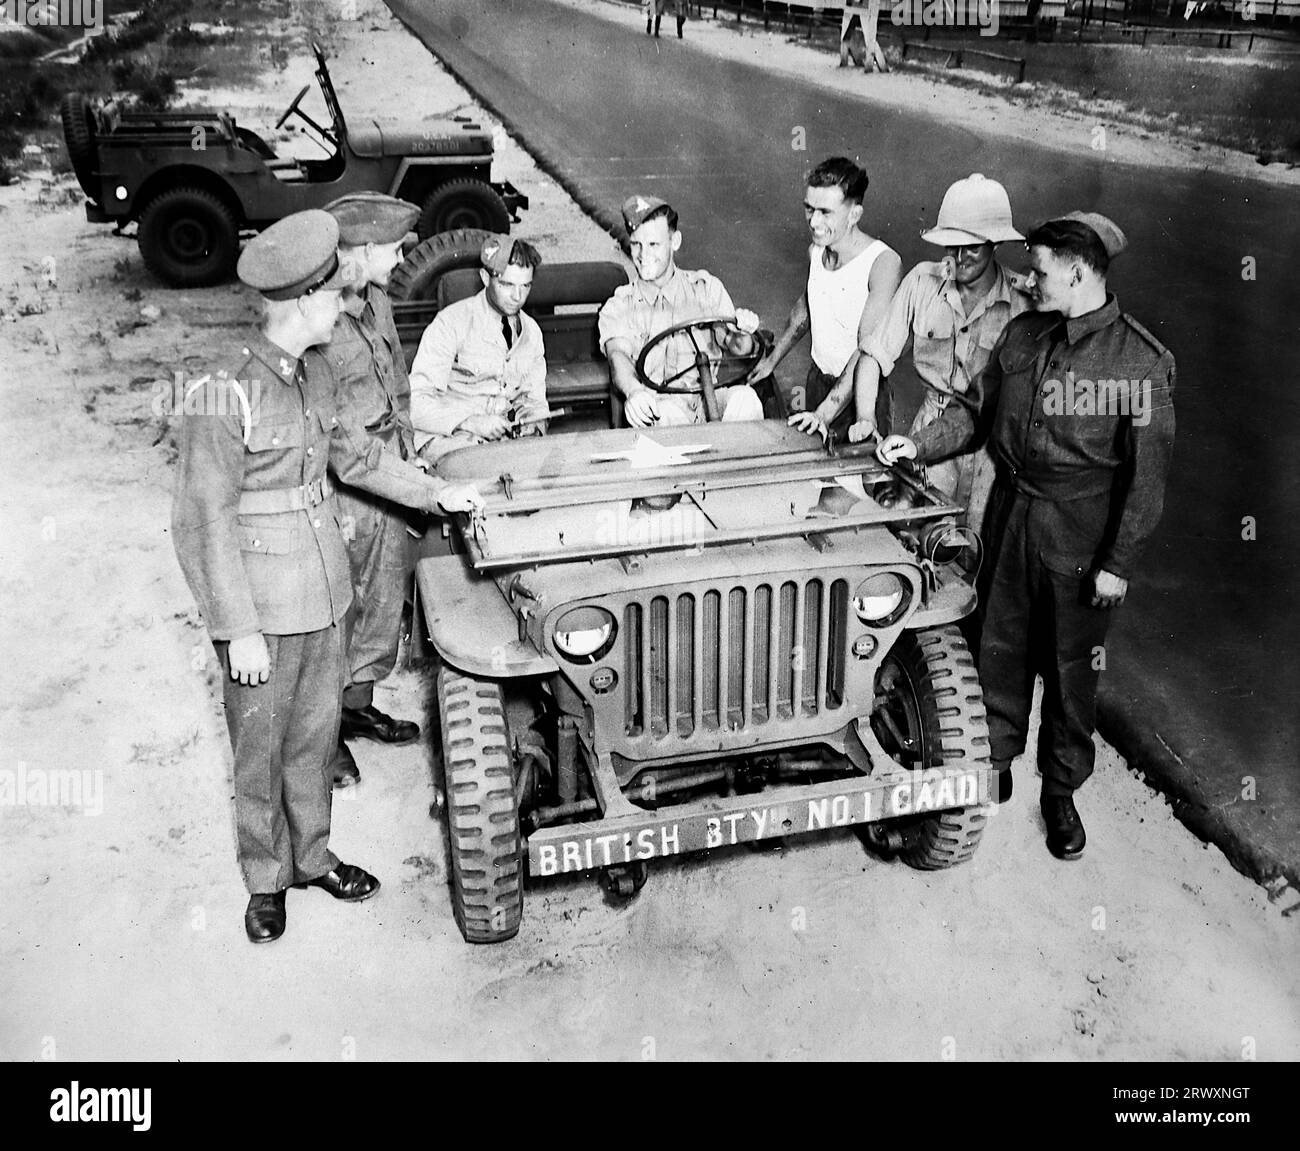 Ein Jeep der britischen Armee mit einer Gruppe von Soldaten, wahrscheinlich in Camp Davis. Seltenes Foto: Aus einer Sammlung eines unbekannten britischen Soldaten über die No. 1 Composite Demonstration, AA Battery, Tour durch die USA, vom 11. Juli 1943. Dies ist eines von mehr als hundert Bildern in der Sammlung, die im Durchschnitt etwa 4 x 3 Zoll groß waren. Stockfoto